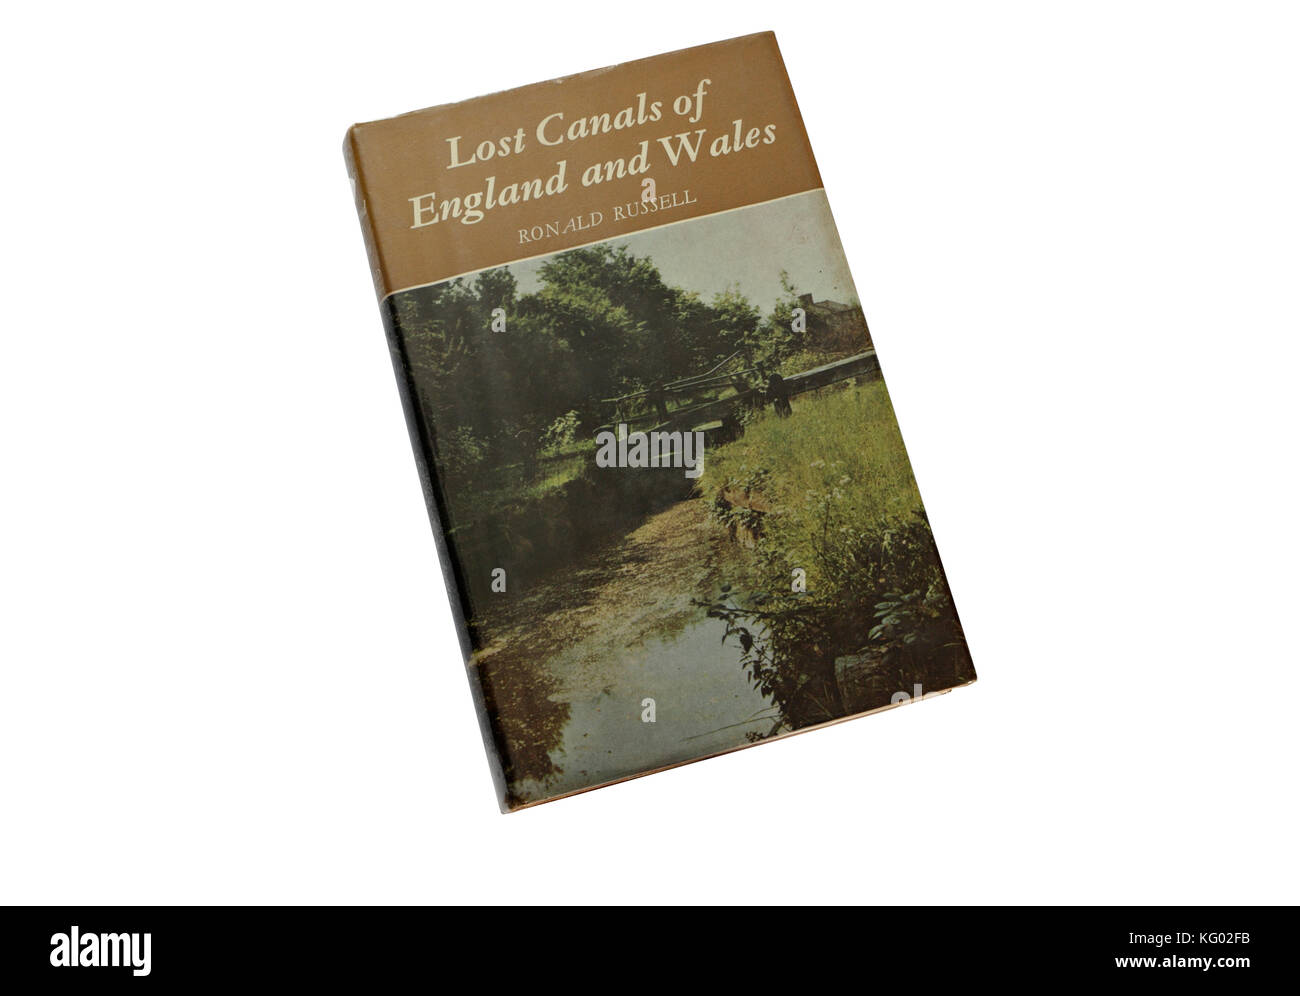 Verloren Kanäle von England und Wales Buch Cover Stockfoto